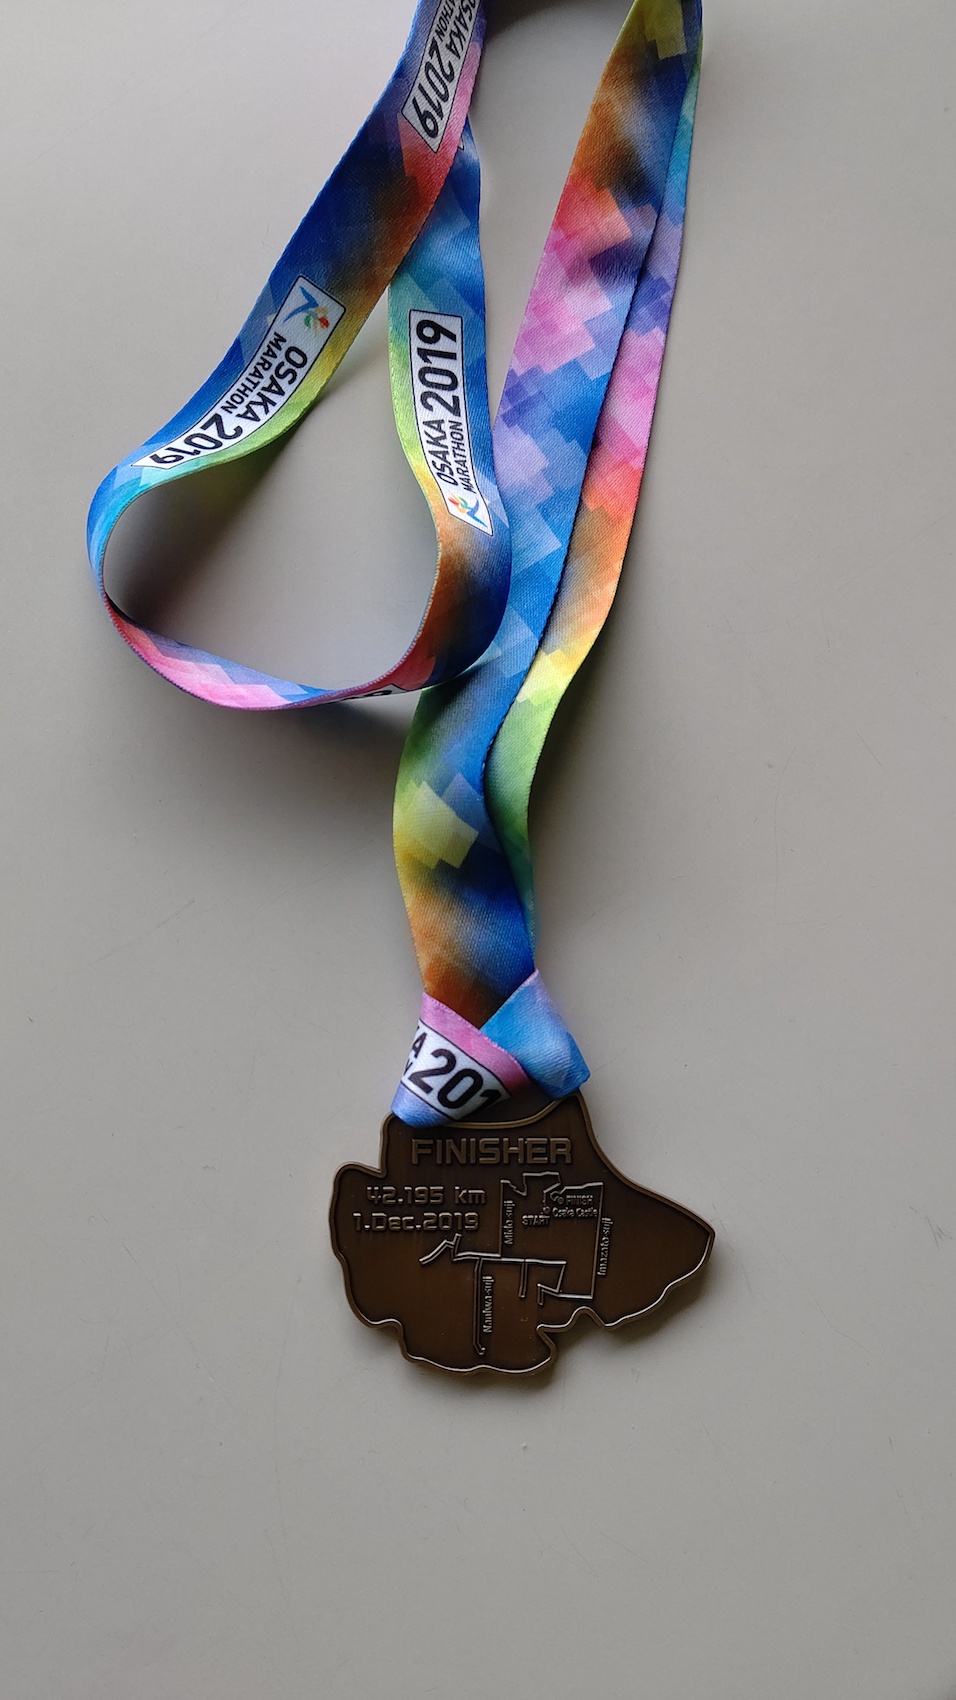 大阪マラソン2019の完走メダル